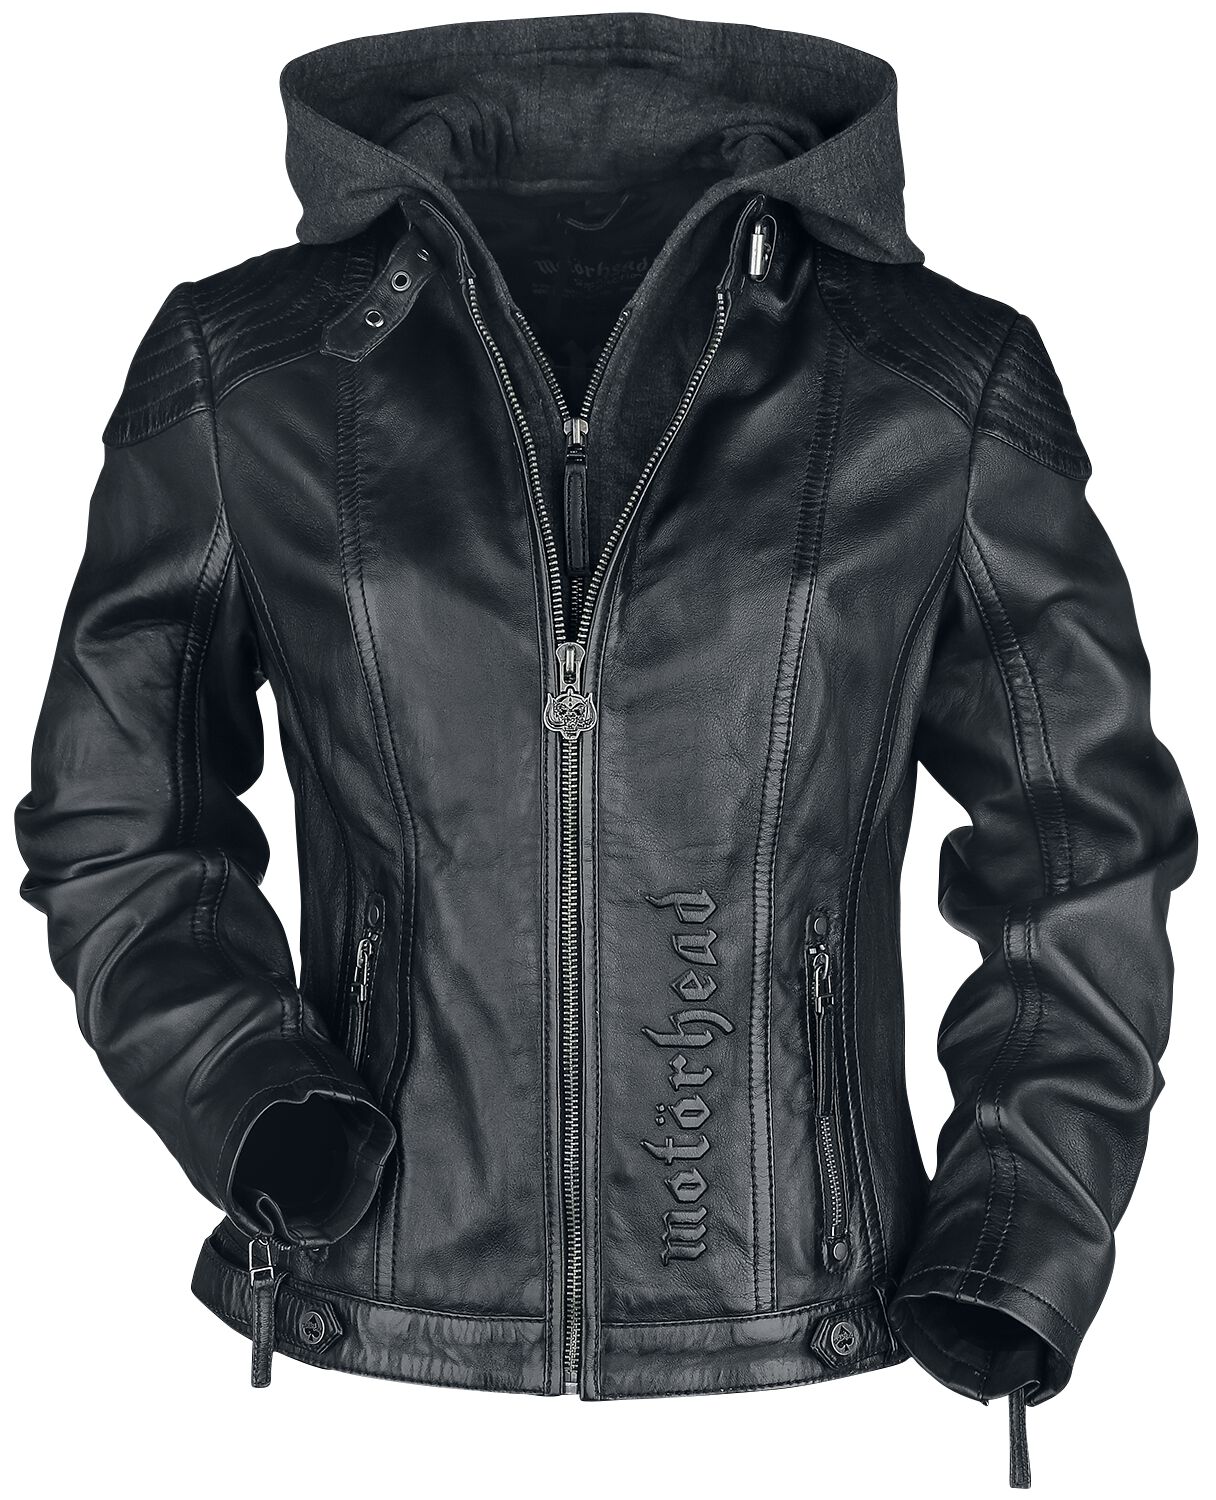 Veste en cuir de Motörhead - EMP Signature Collection - M à L - pour Femme - chiné noir/gris